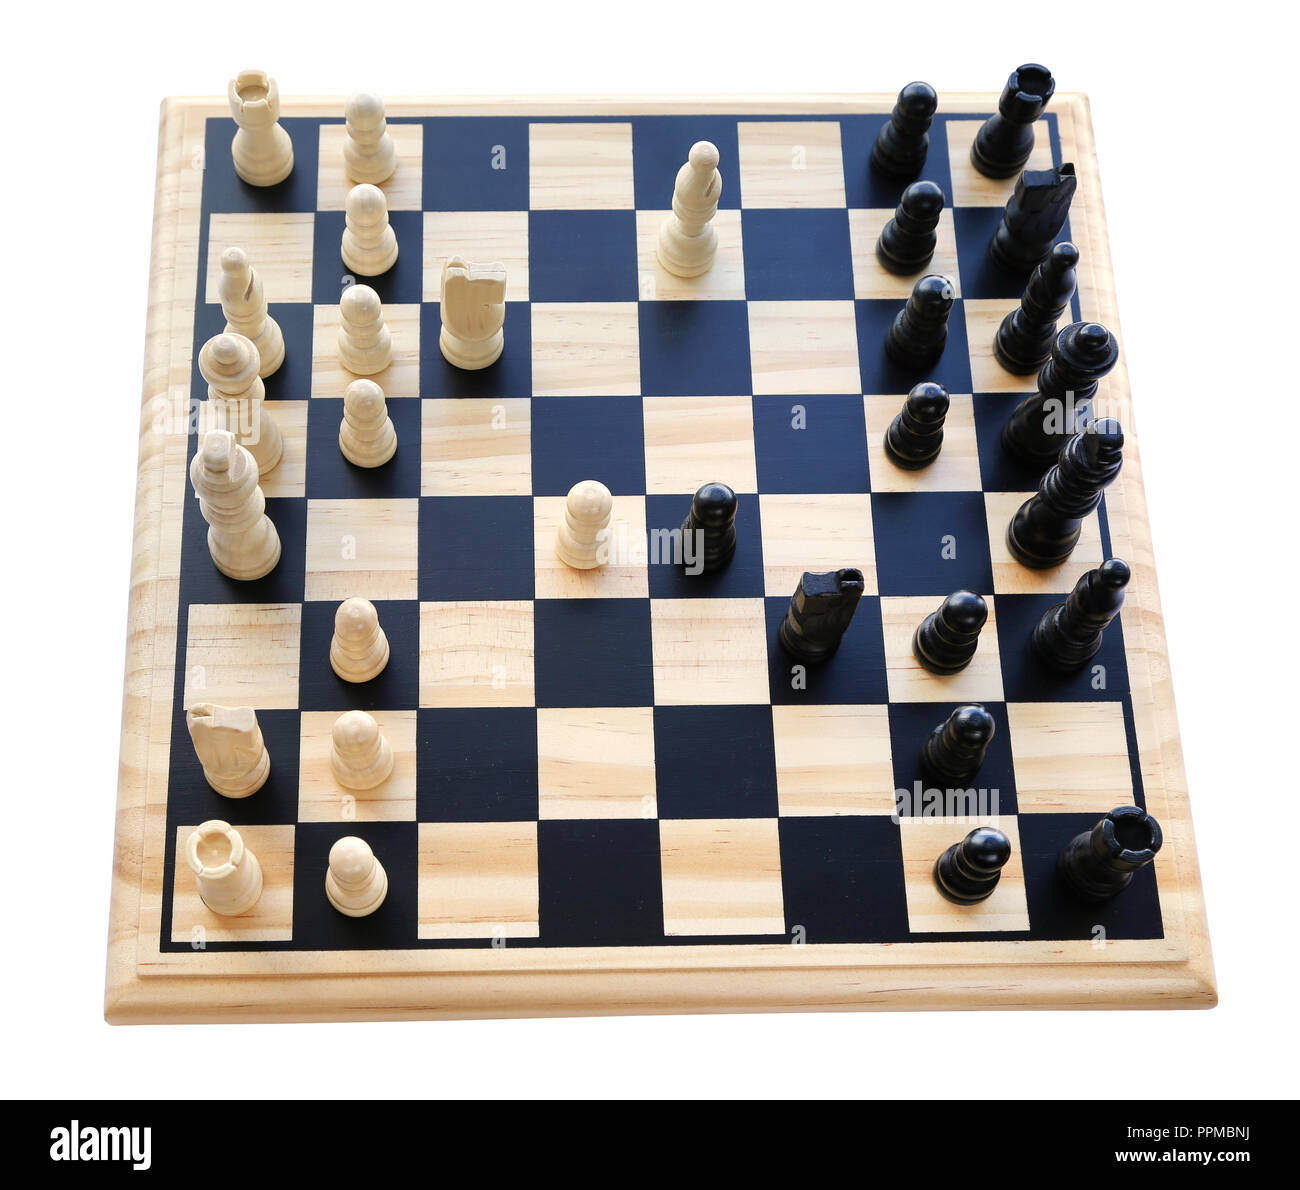 Jouer aux échecs avec différents morceaux dans comité sur fond blanc Banque D'Images